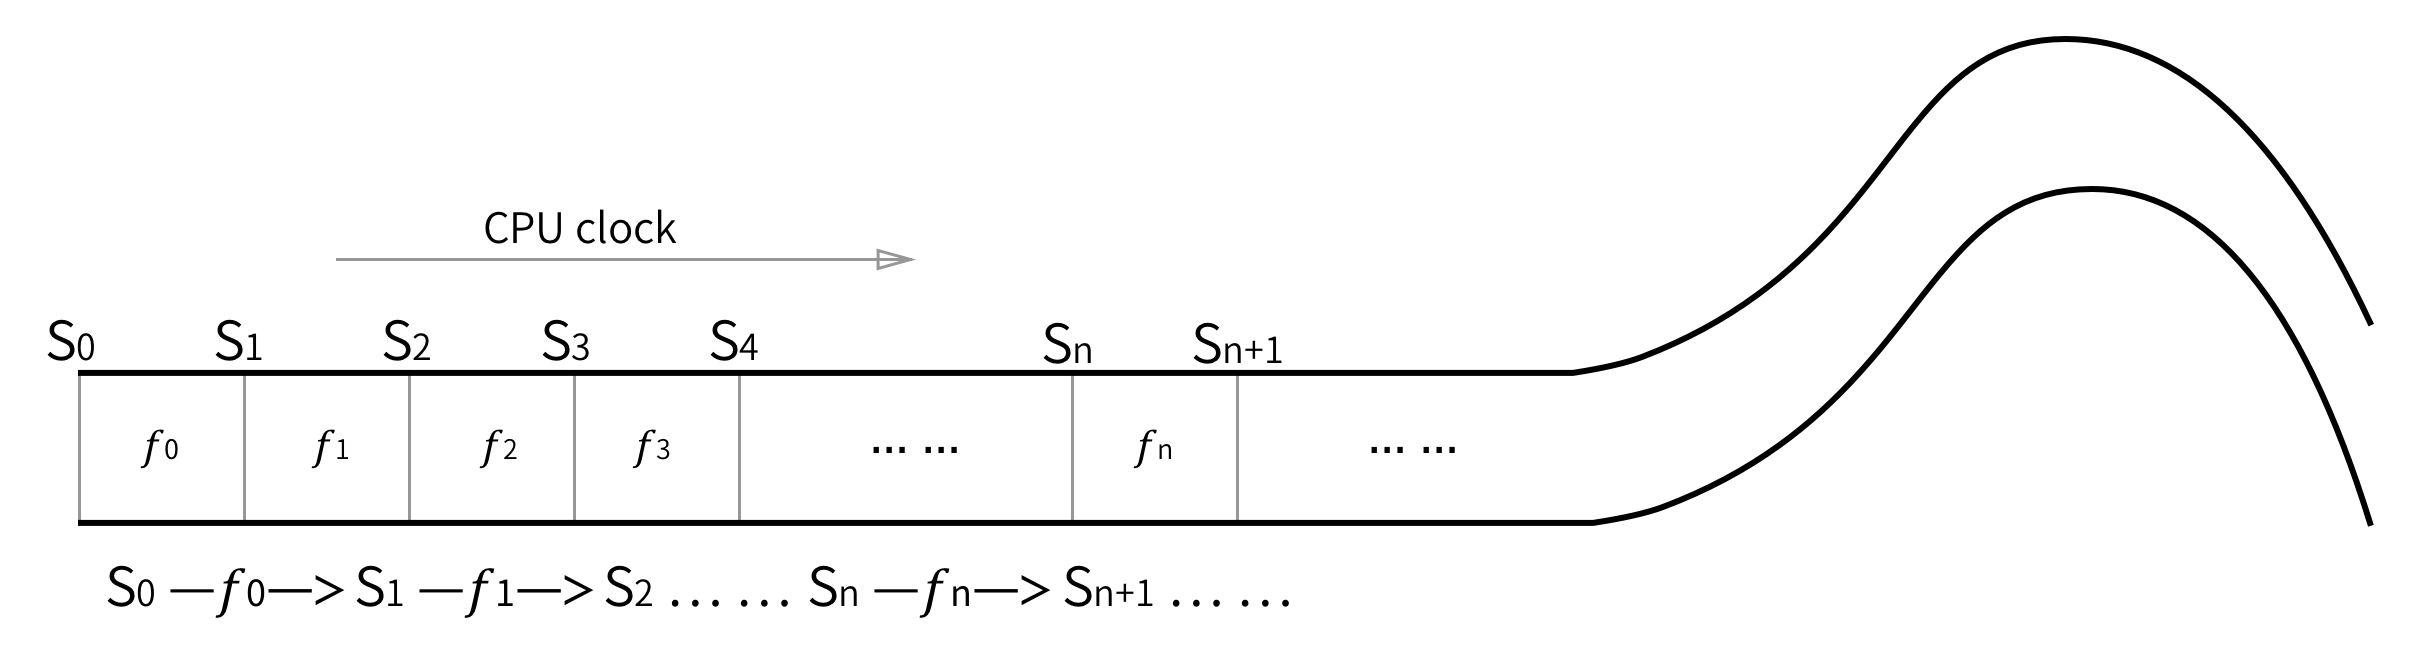 f-common-computer-diagram